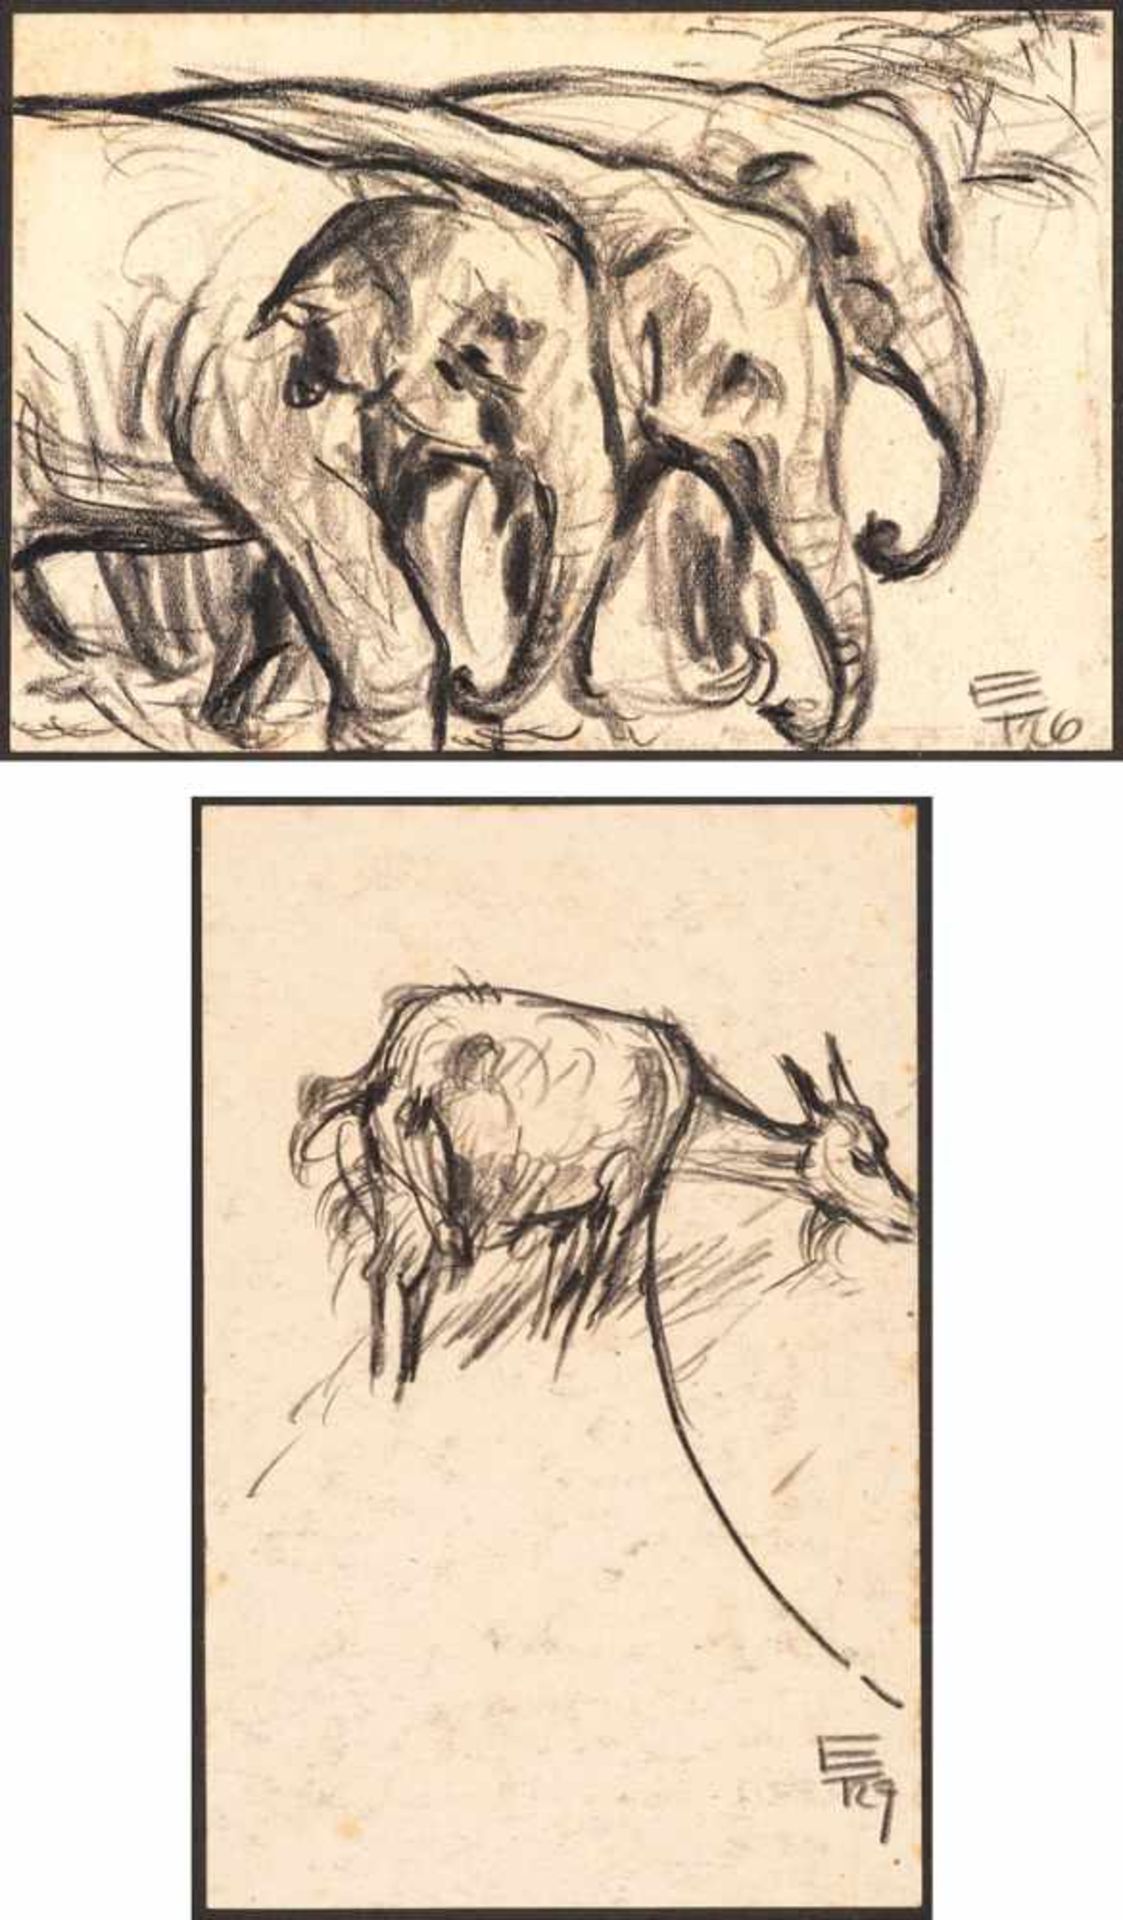 Egon Tschirch (1889 - Rostock - 1948)Zwei Zeichnungen. 1. Elefanten, 1926. Graphitzeichnung. 110 x